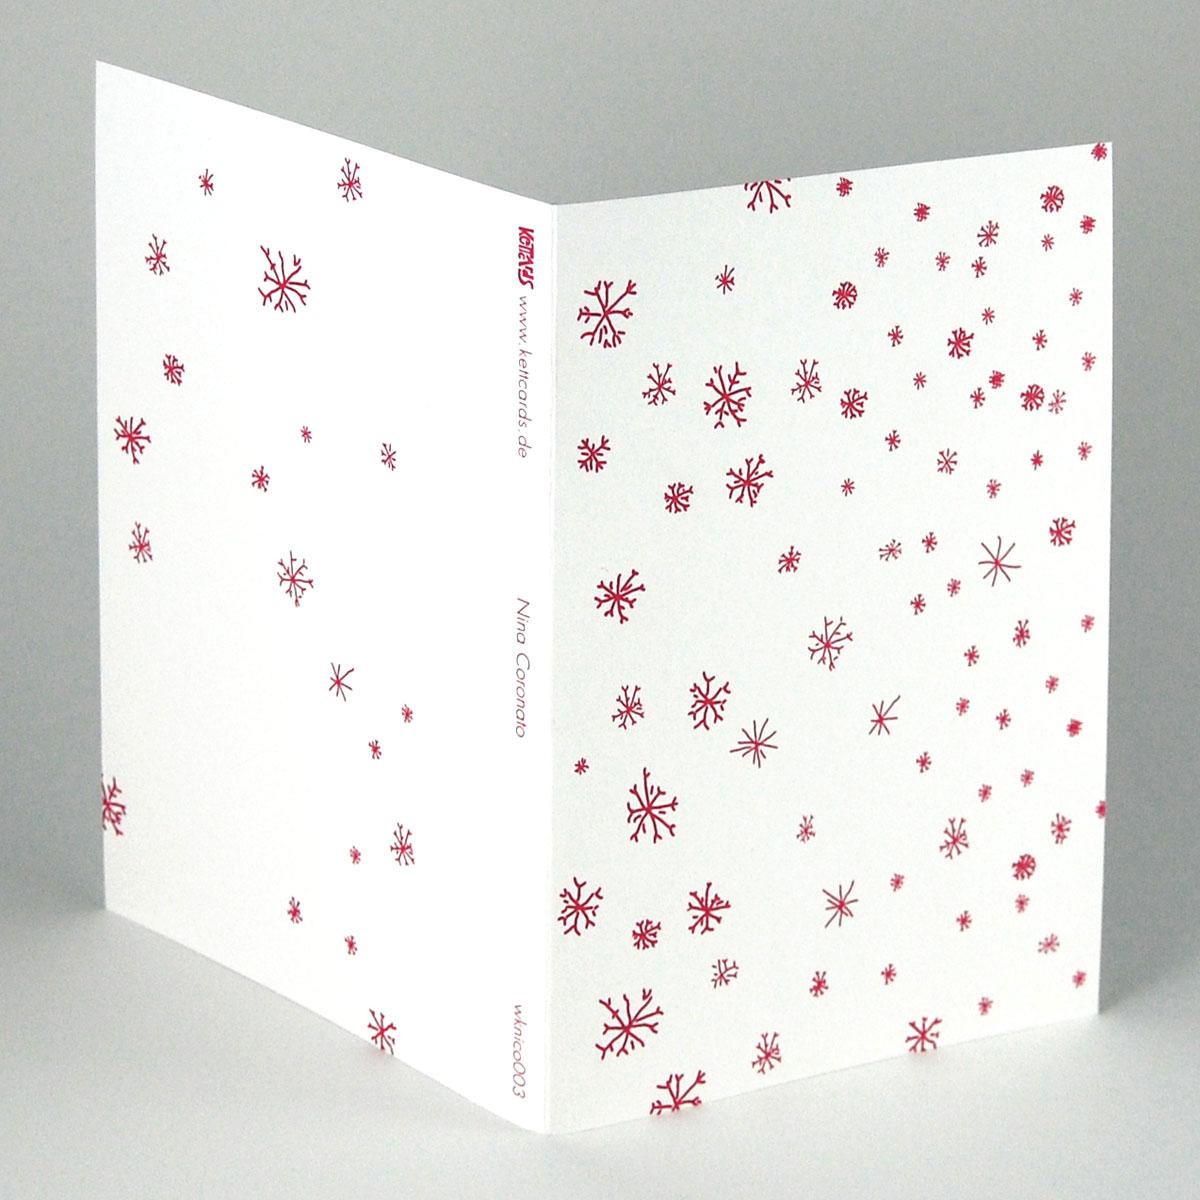 10 rote Weihnachtskarten mit roten Umschlägen: Schneeflocken